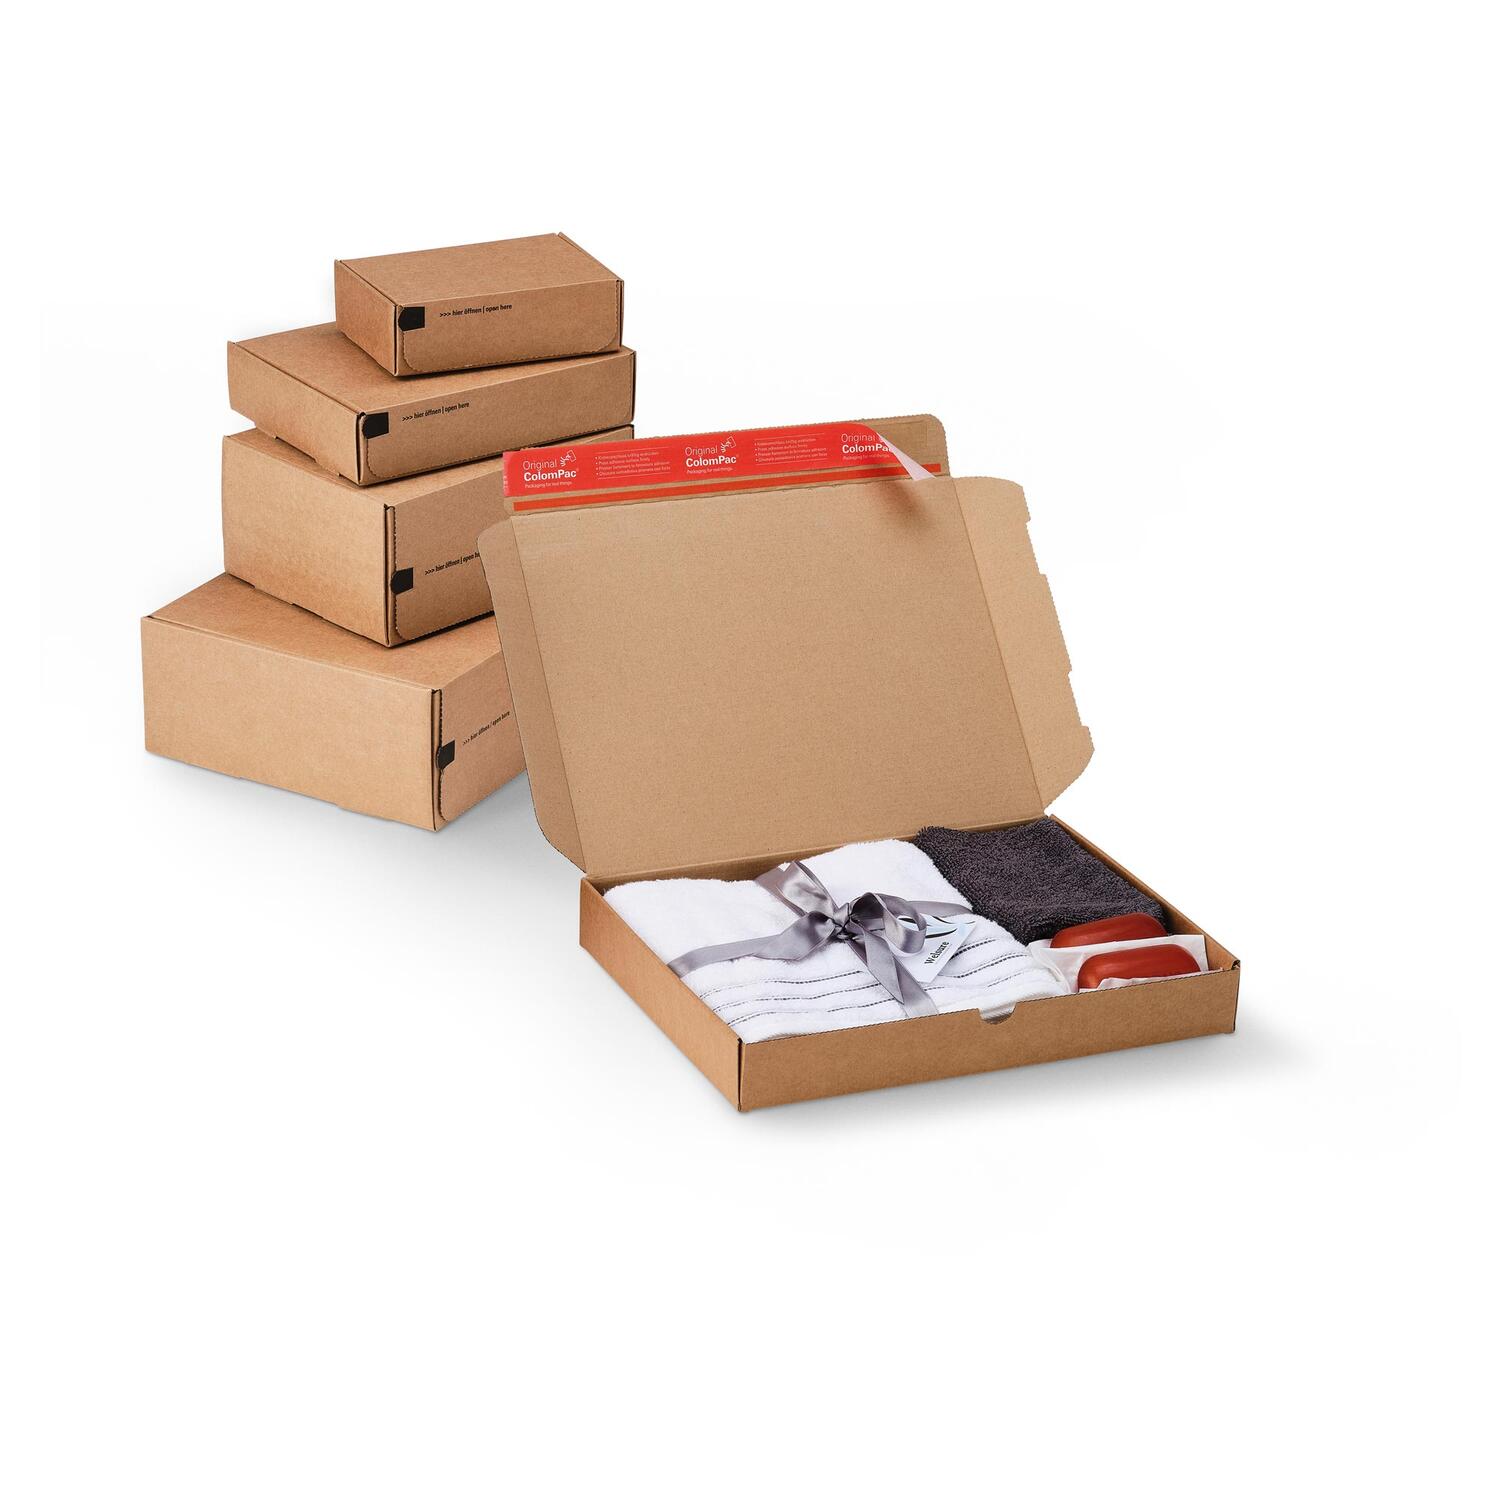 ColomPac E-Commerce Modulboxen 325 x 216 x 96mm mit Selbstklebeverschluss & Aufreifaden braun